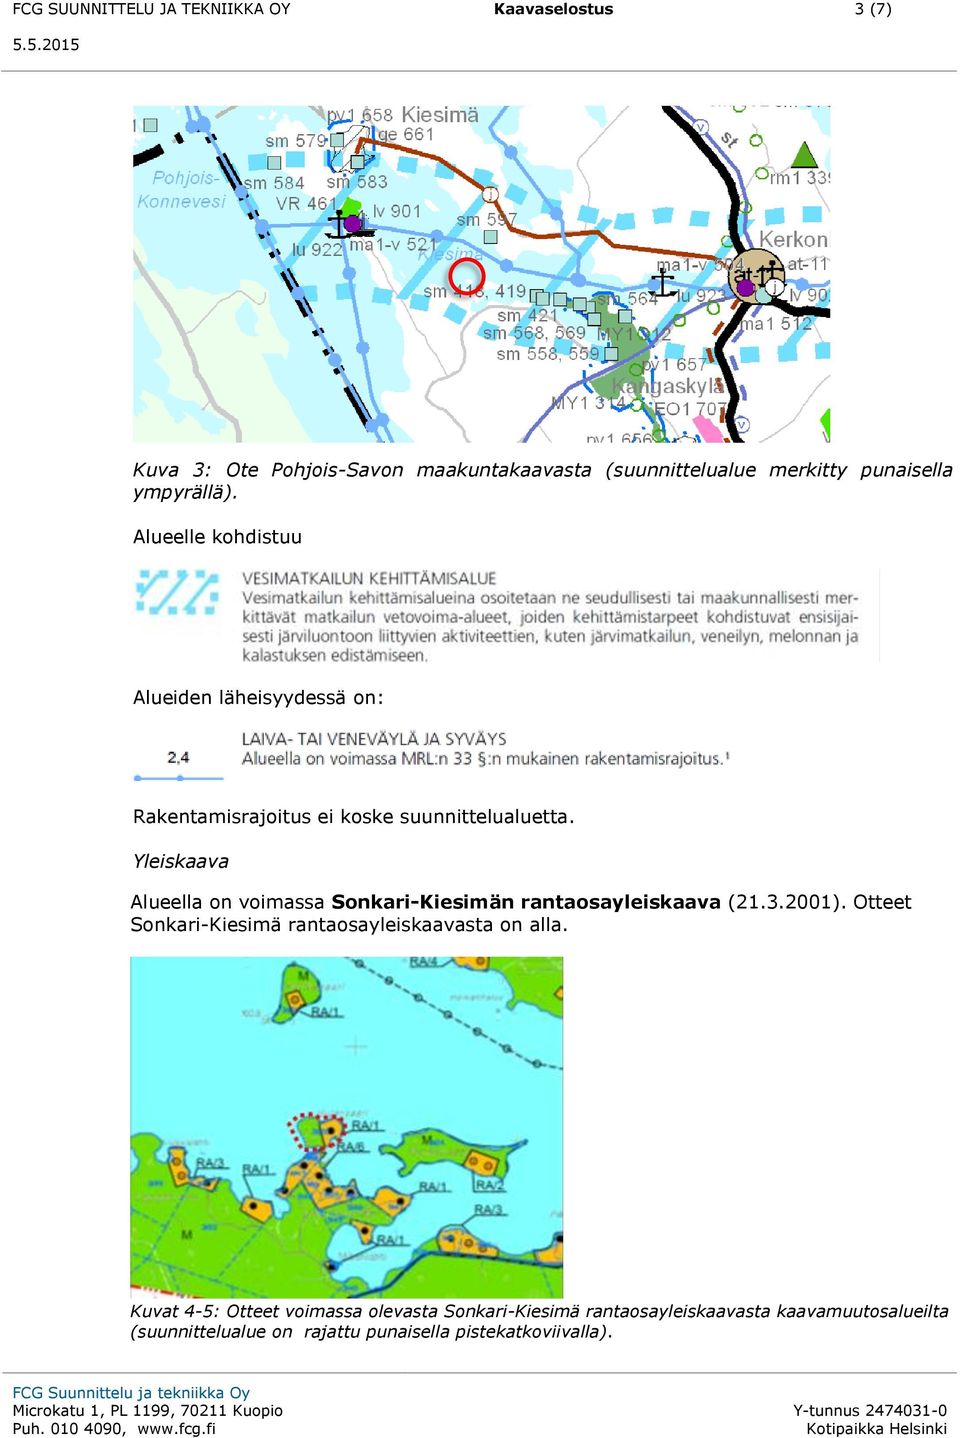 Yleiskaava Alueella on voimassa Sonkari-Kiesimän rantaosayleiskaava (21.3.2001).